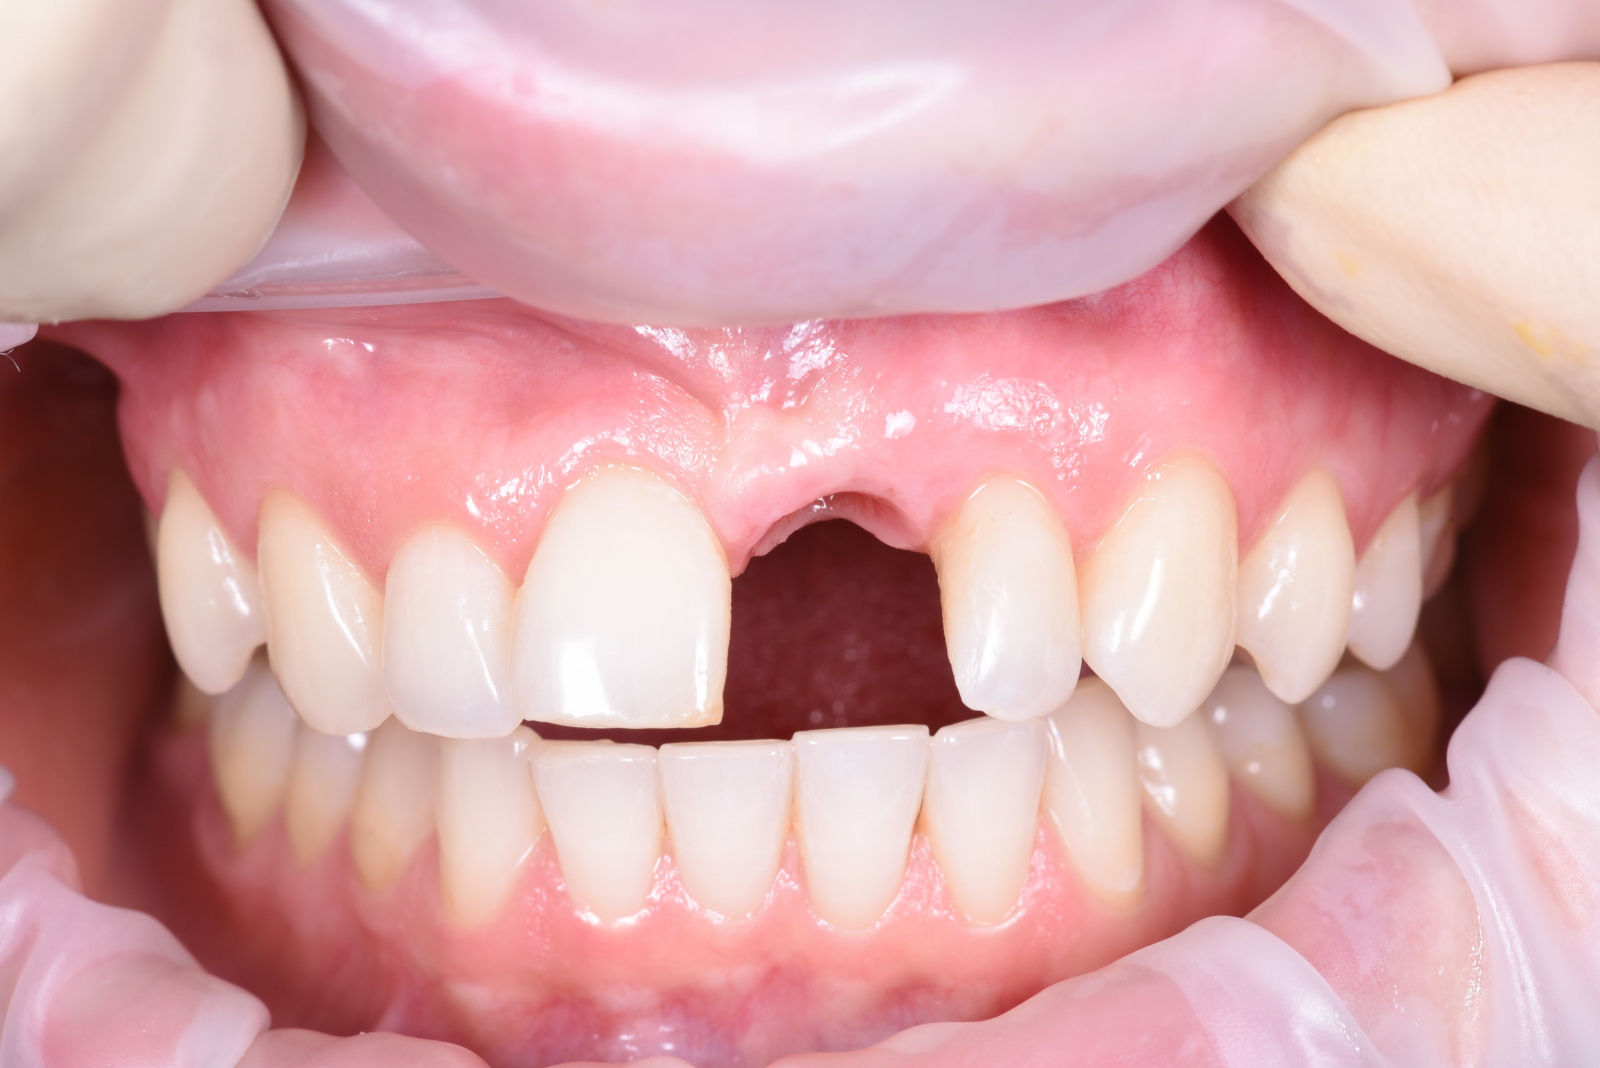 Работа врача: Установка имплантата 21-го зуба